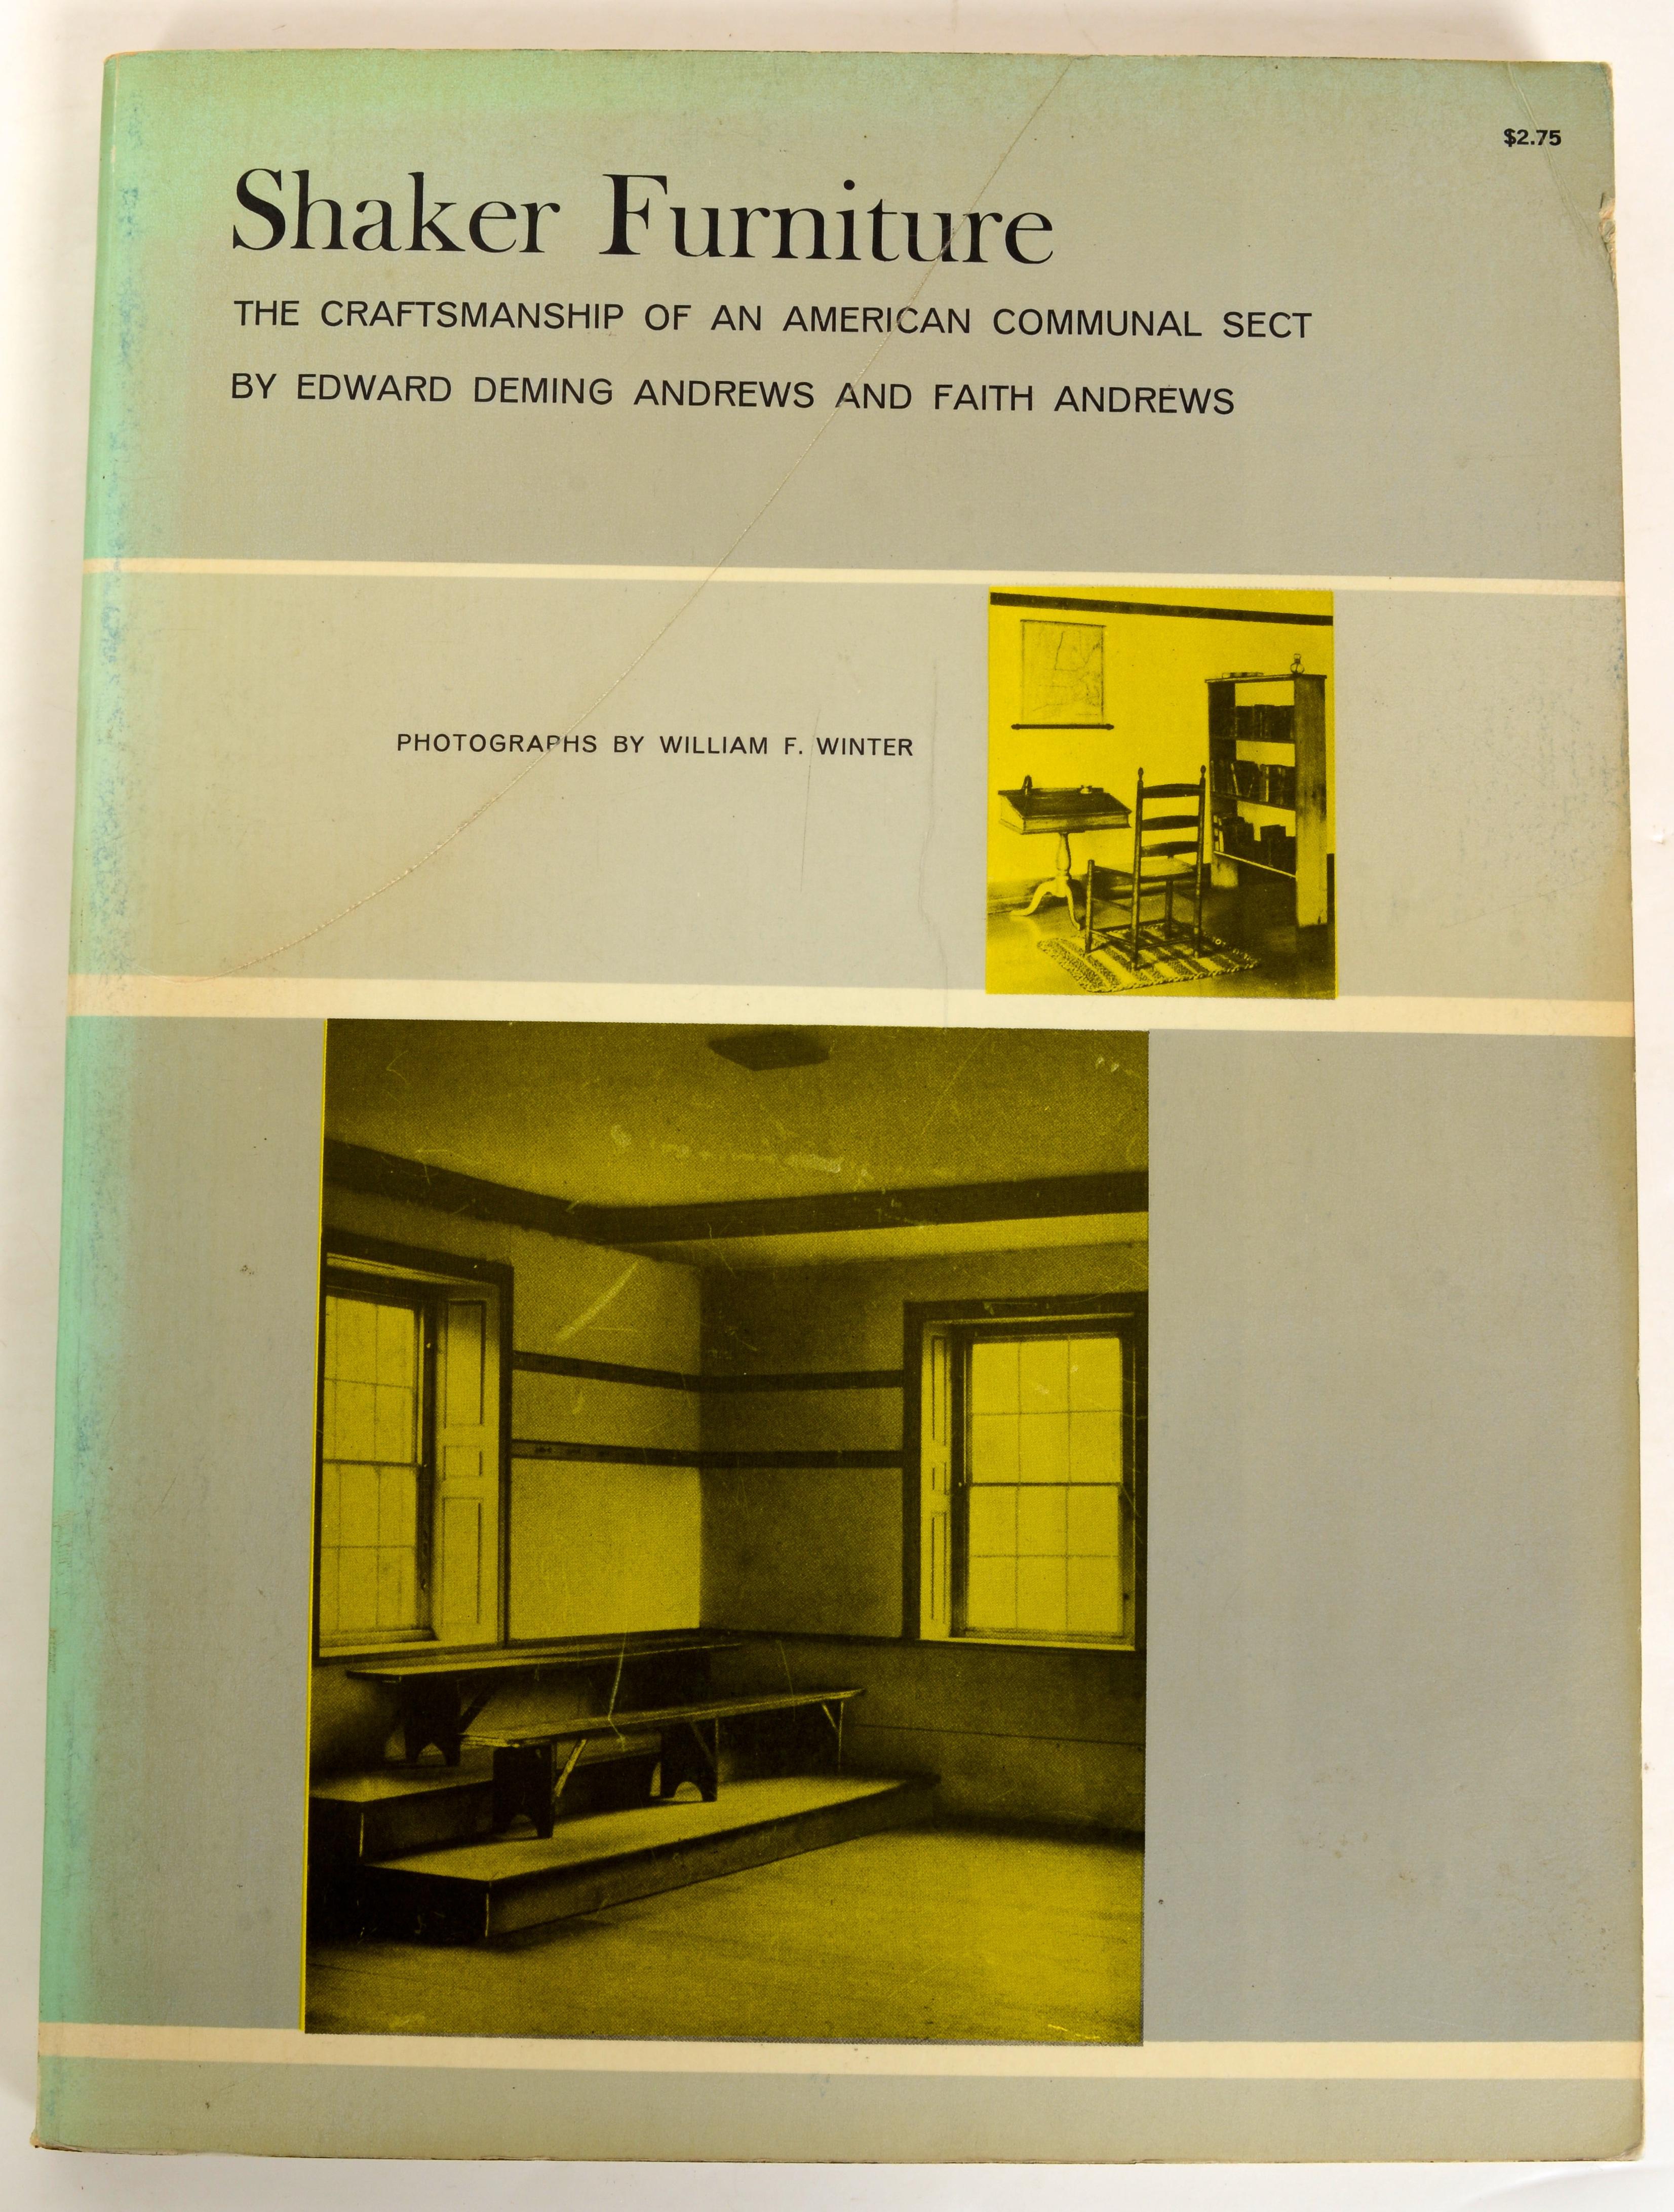 Satz von drei wichtigen Büchern über Shaker-Möbel und Zubehör:
1. By Shaker Hands von June Sprigg, Softcover Veröffentlicht von Knopf, 1975. New York. 
2. Shaker-Möbel; Die Handwerkskunst einer amerikanischen Gemeinschaftssekte
von Edward Deming